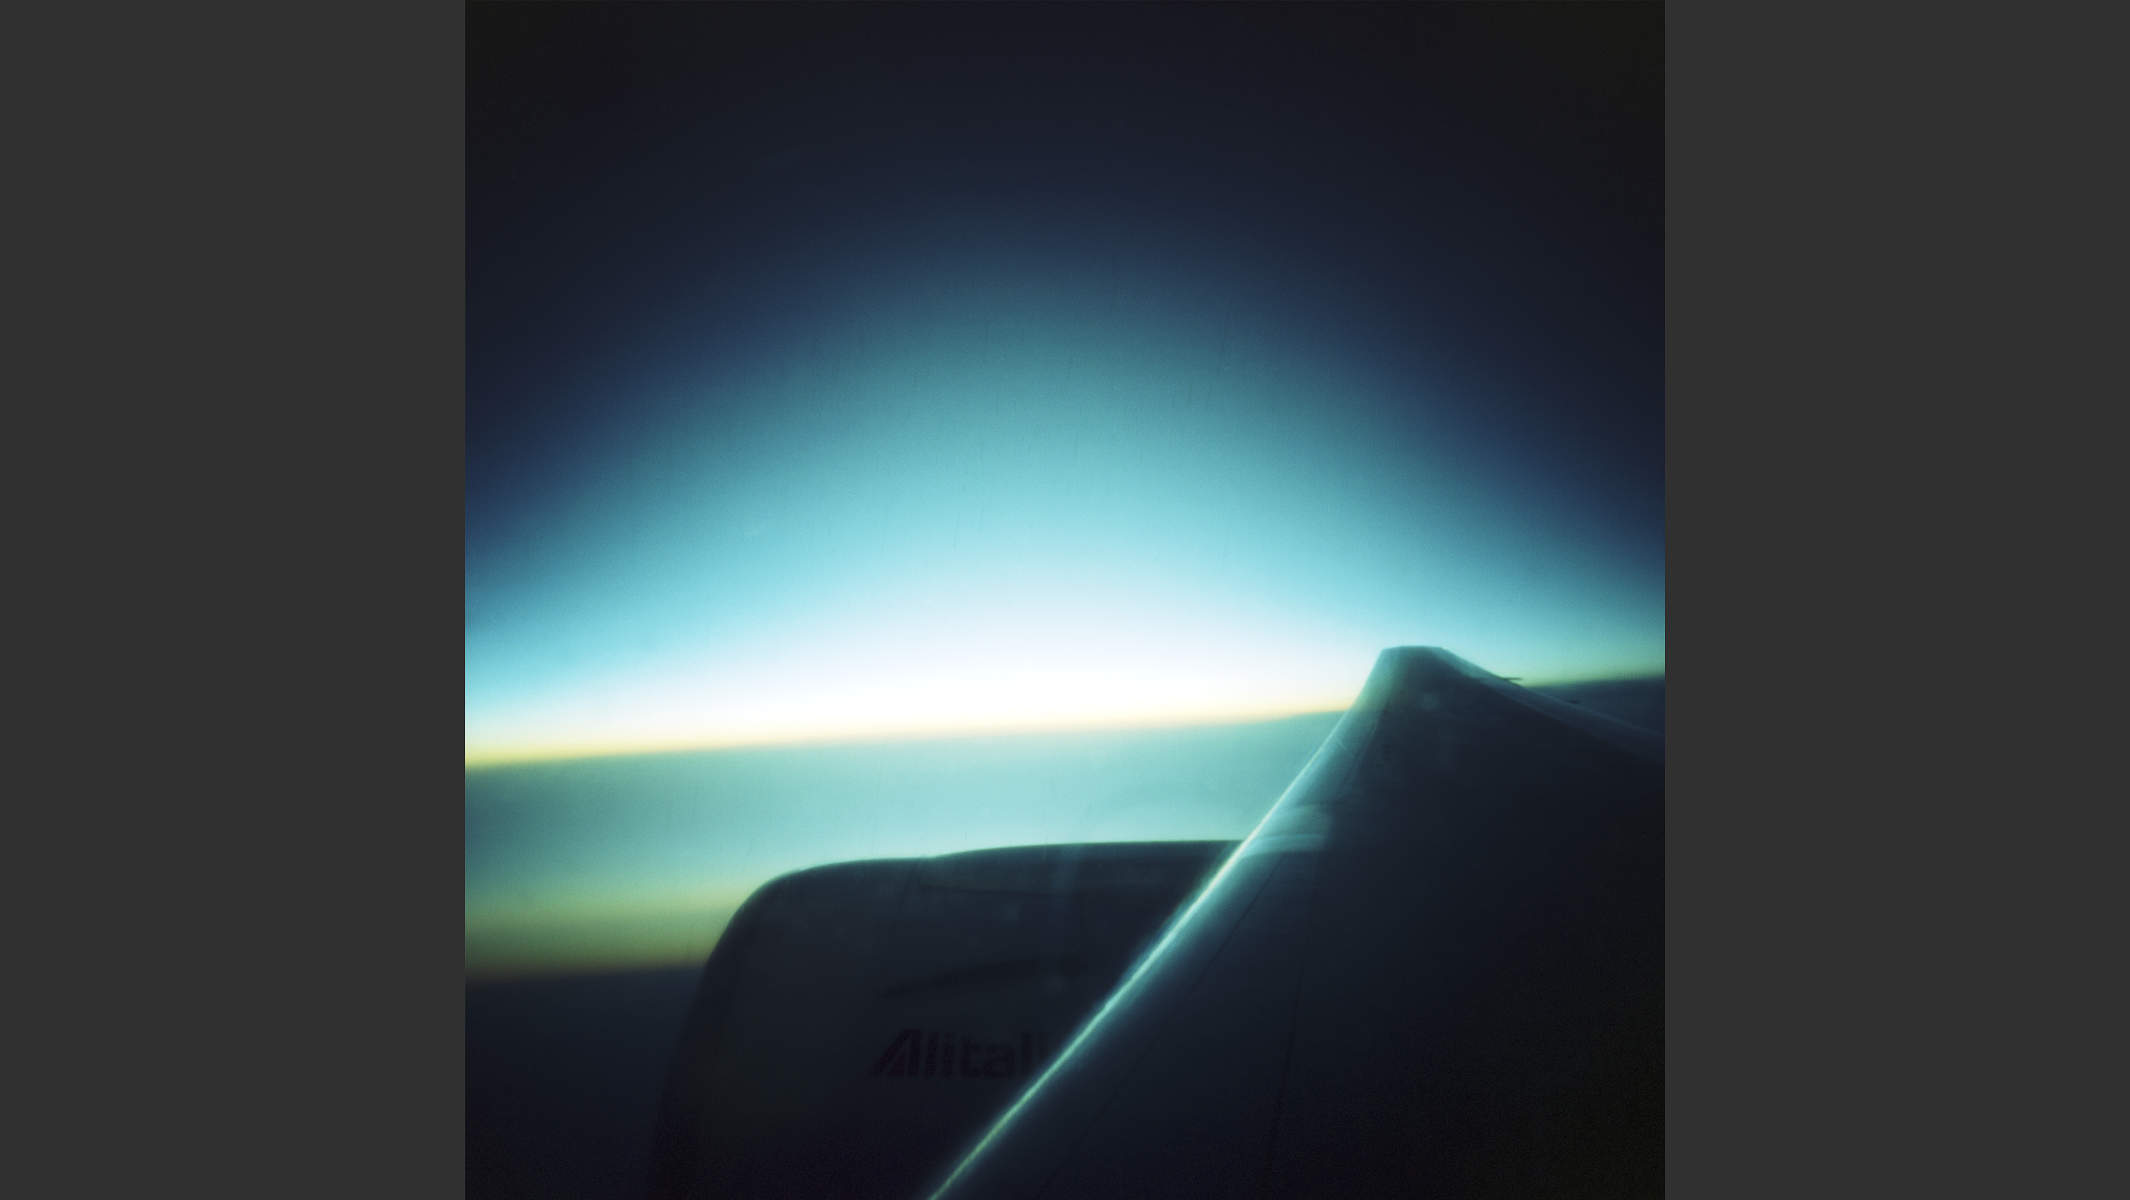 Lochkamera-Foto des Sonnenaufgangs über dem Mittelmeer über einen Flugzeugflügel. © Martin Geier